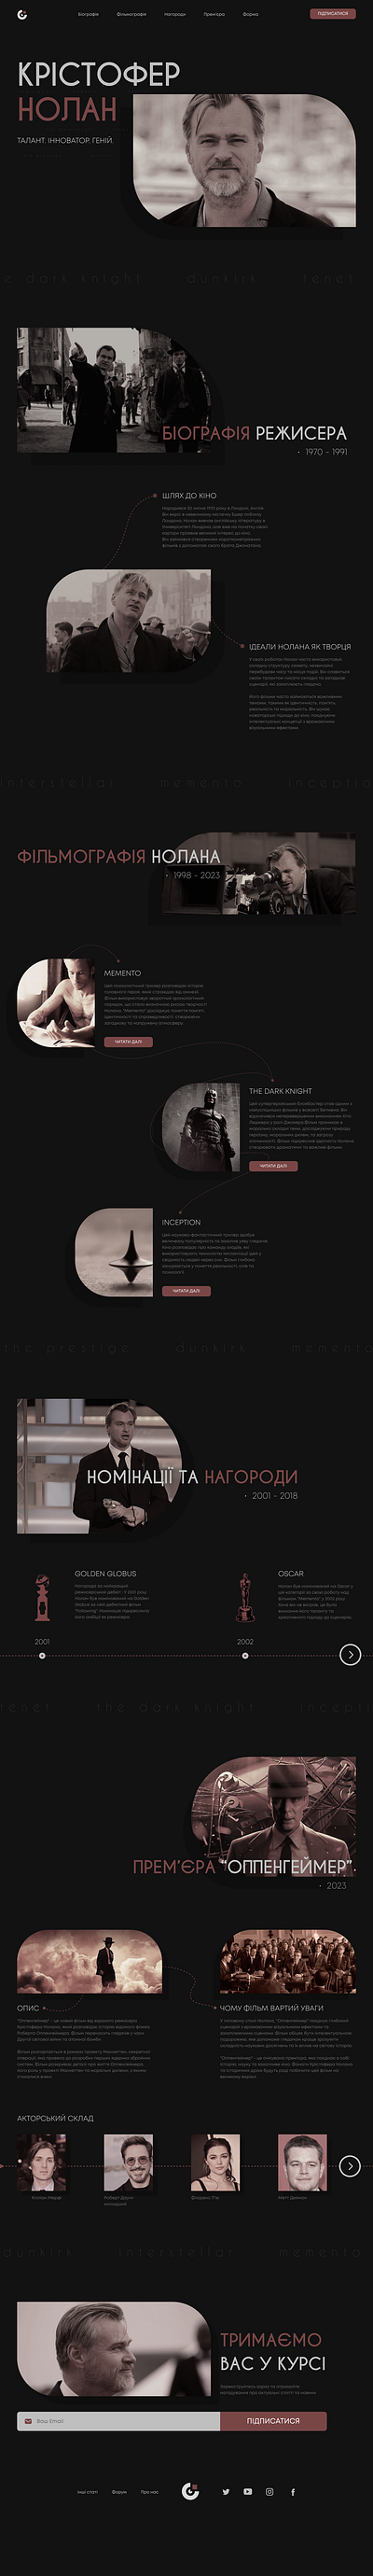 Landing Page - Christopher Nolan